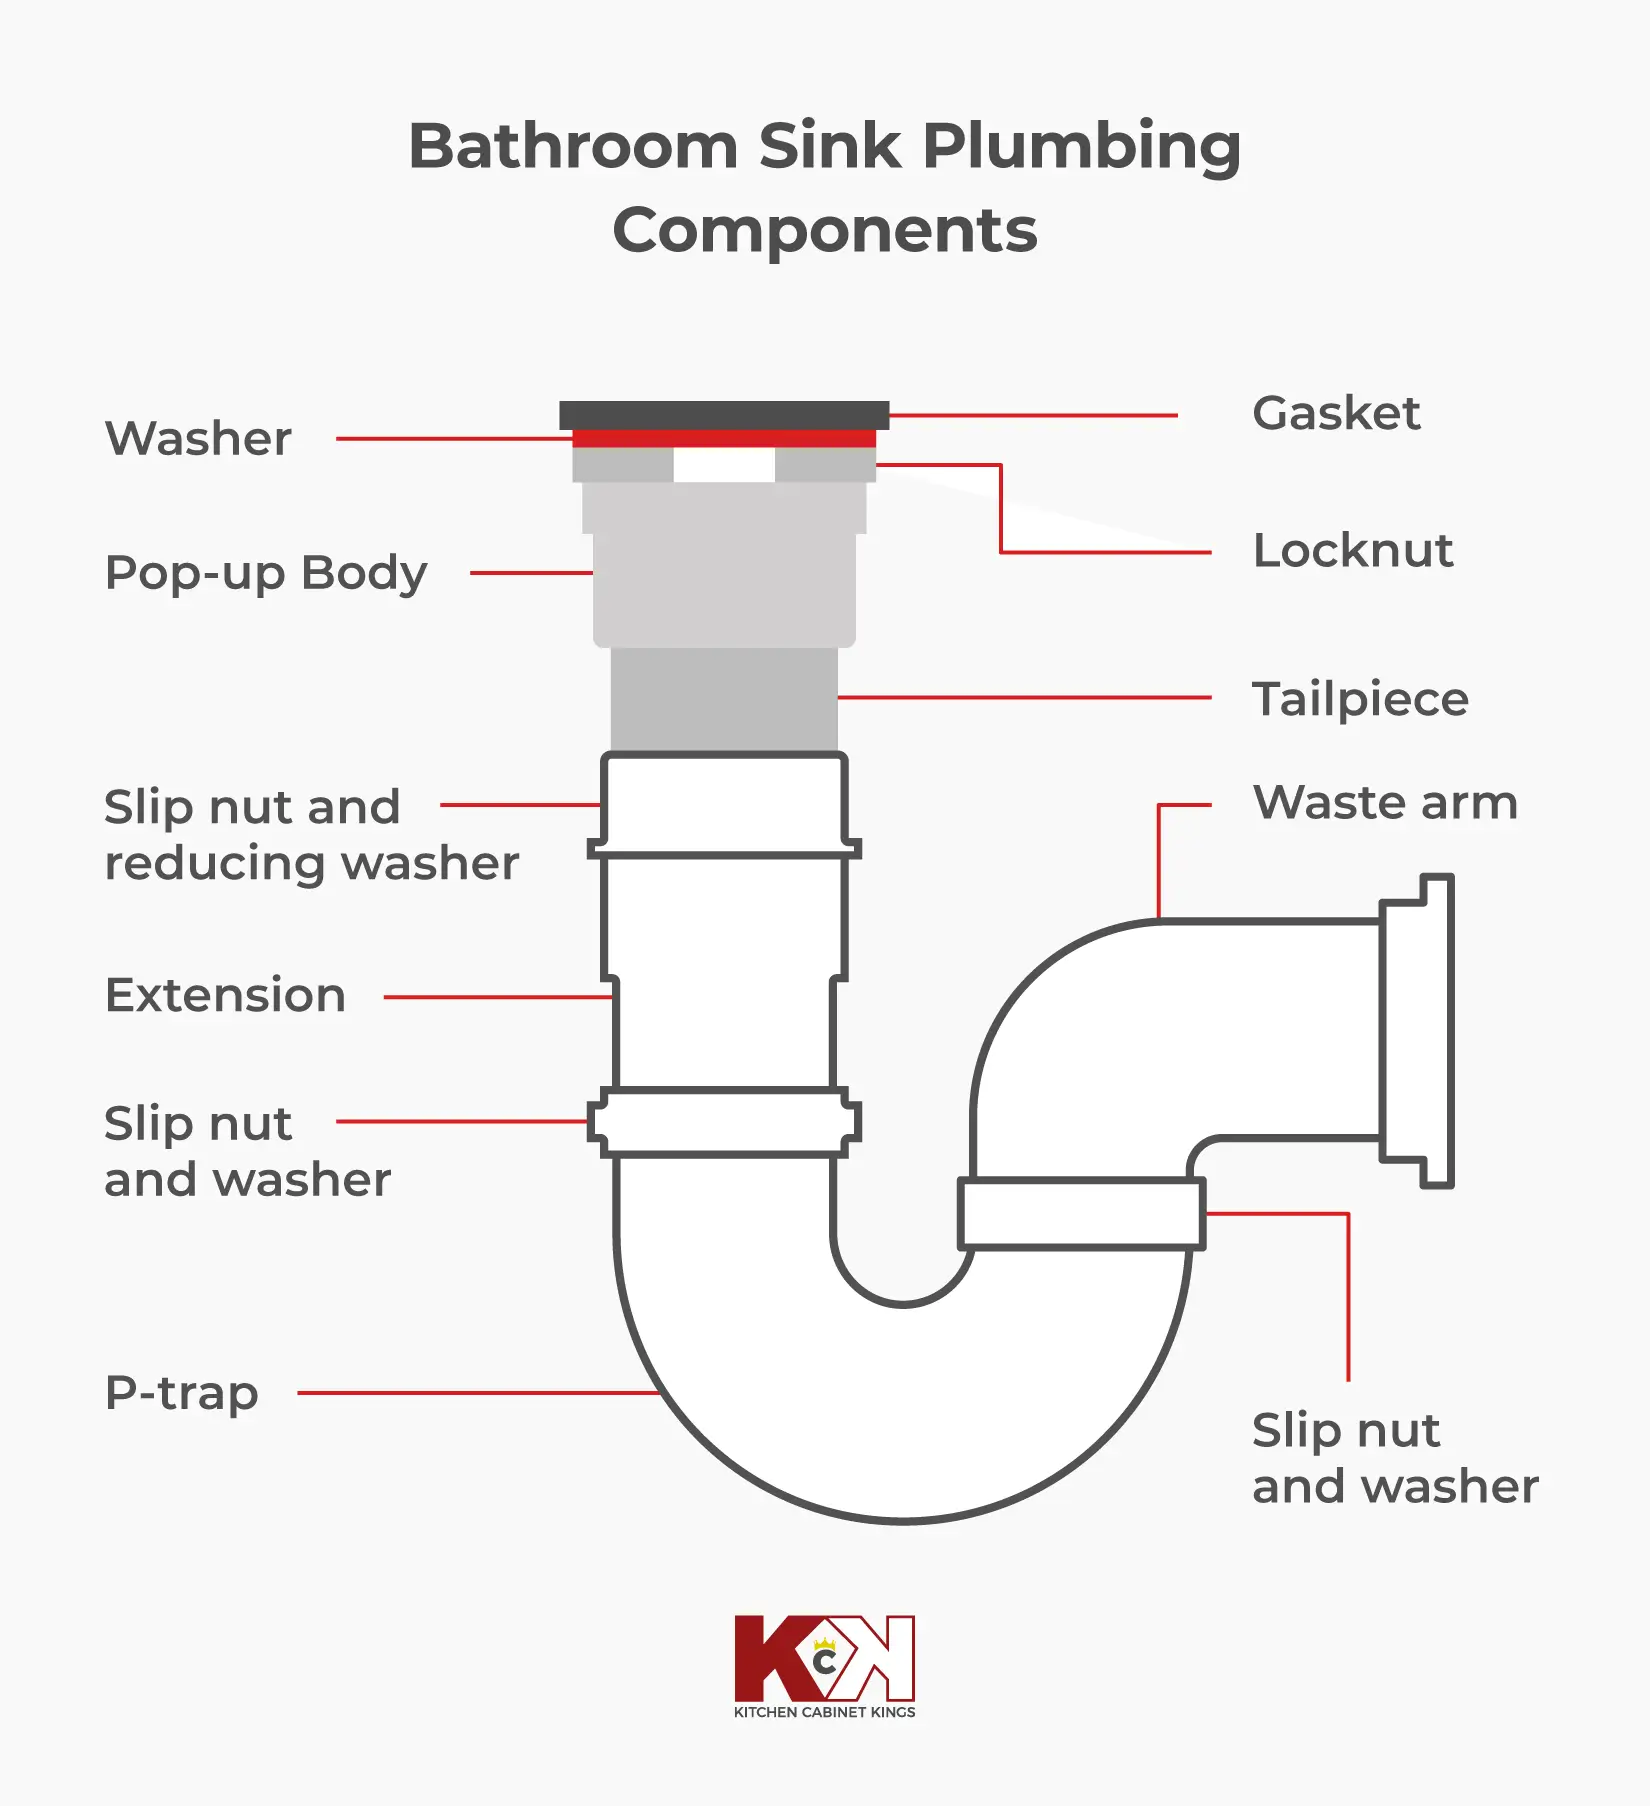 Diagram of bathroom sink plumbing components.